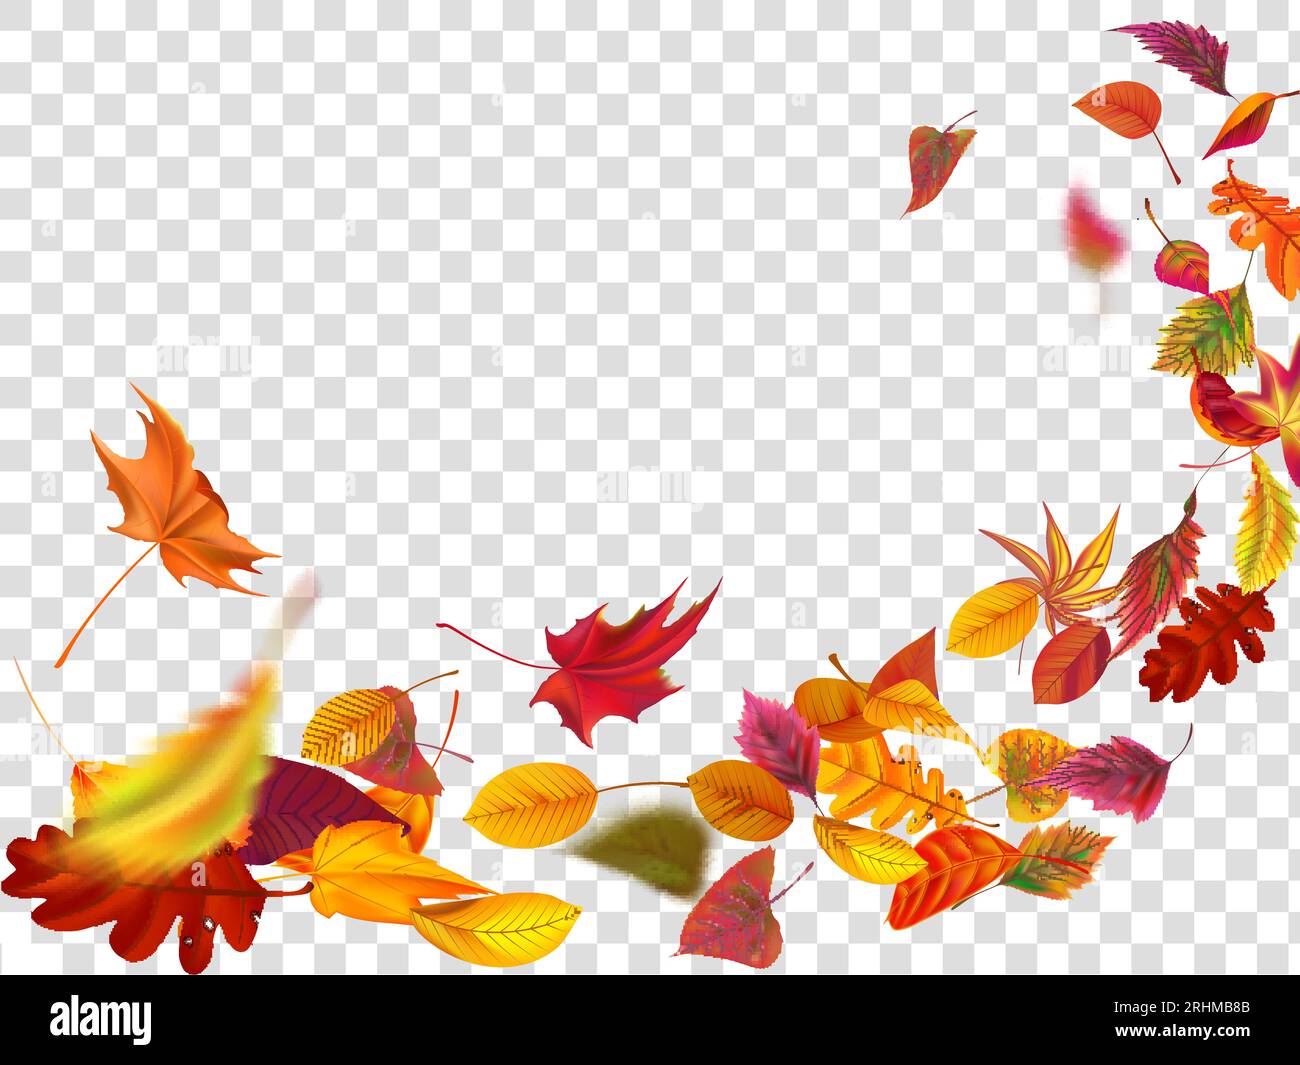 Chutes de feuilles d'automne. Les feuilles tombent, le vent monte le feuillage automnal et les feuilles jaunes. Maple Tree Gold Fall, septembre automne les arbres à feuilles d'or bordent pour s Illustration de Vecteur